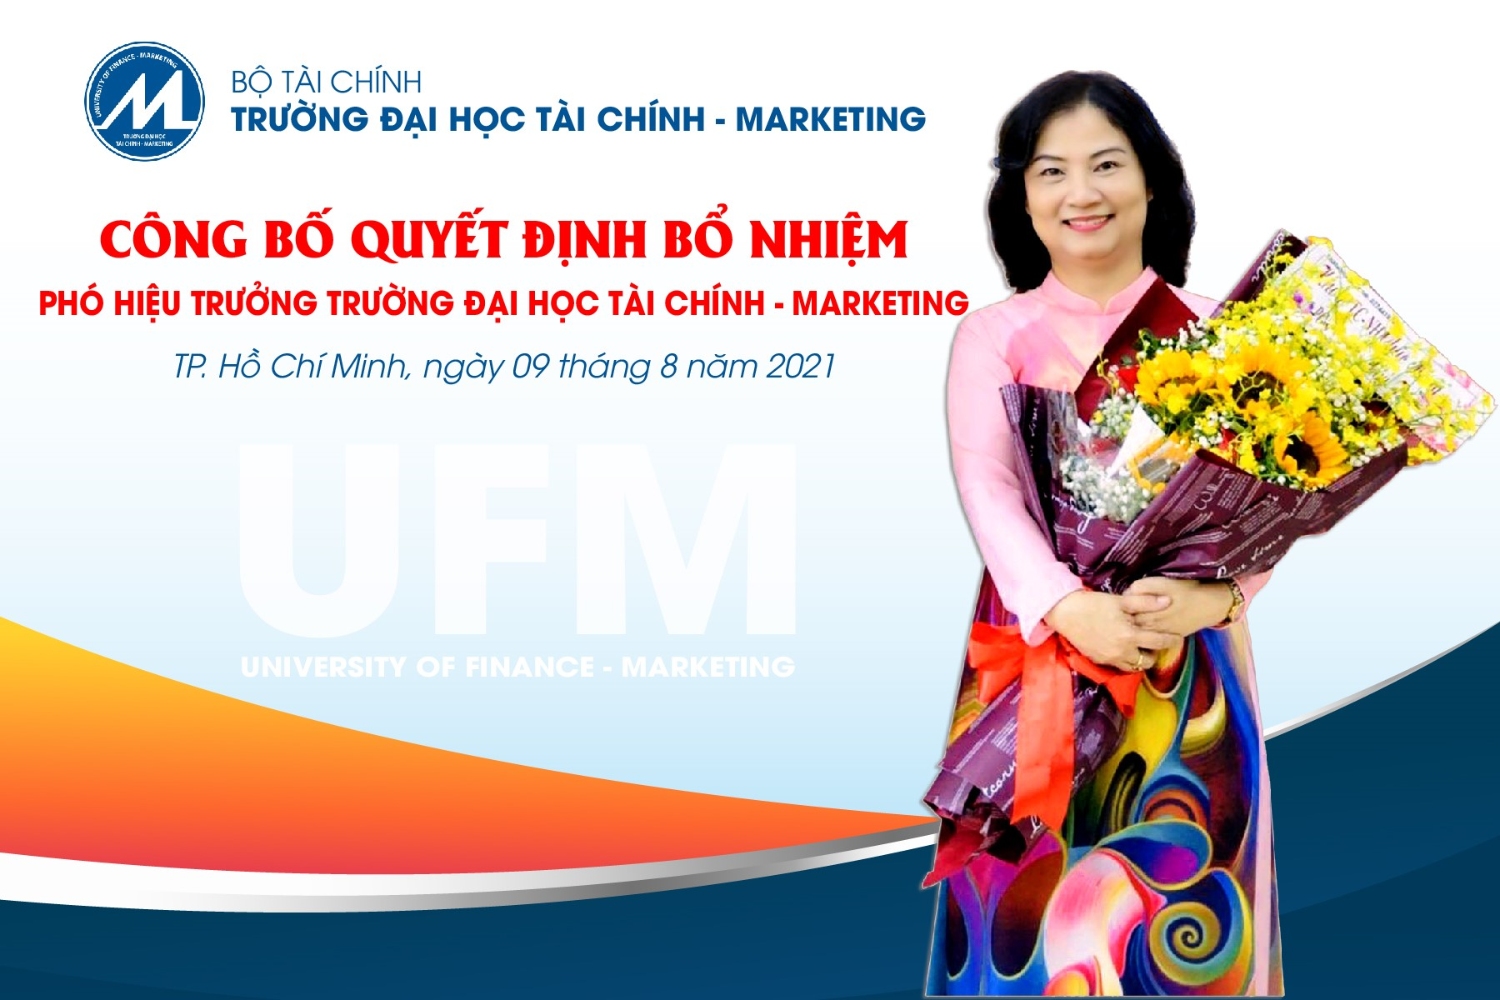 PGS.TS Hồ Thuỷ Tiên, Tân Phó Hiệu trưởng Trường Đại học Tài chính - Marketing